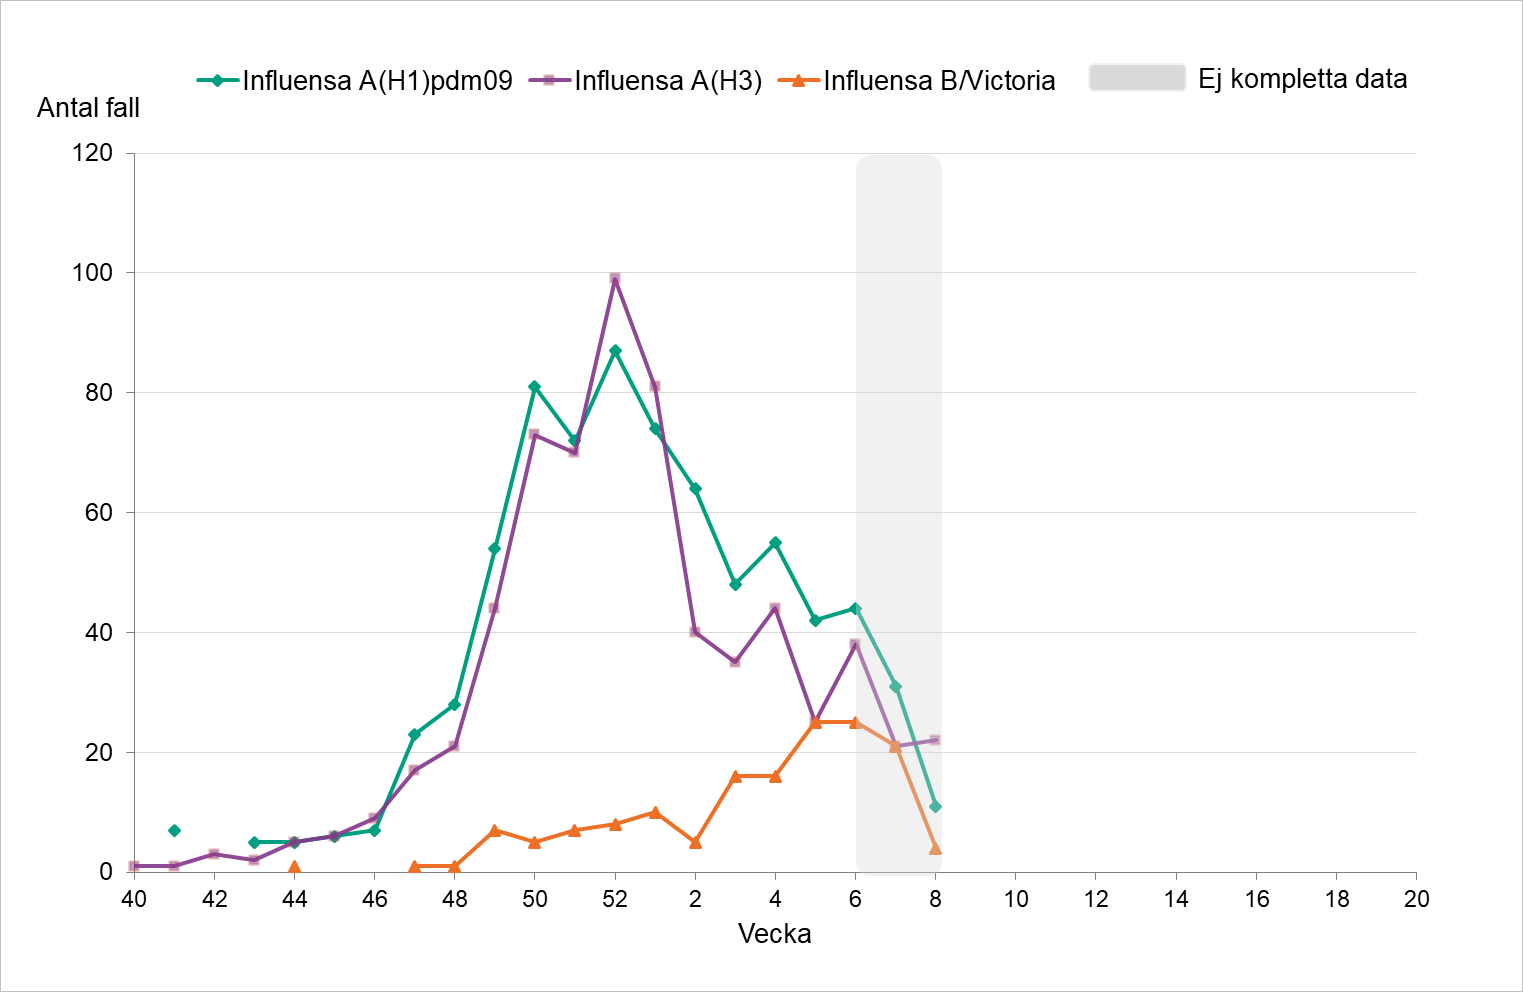 Fördelningen har varit relativt jämn vecka för vecka mellan A H1 och A H3. Under de senaste veckorna ses något fler fall av B/Victoria. 